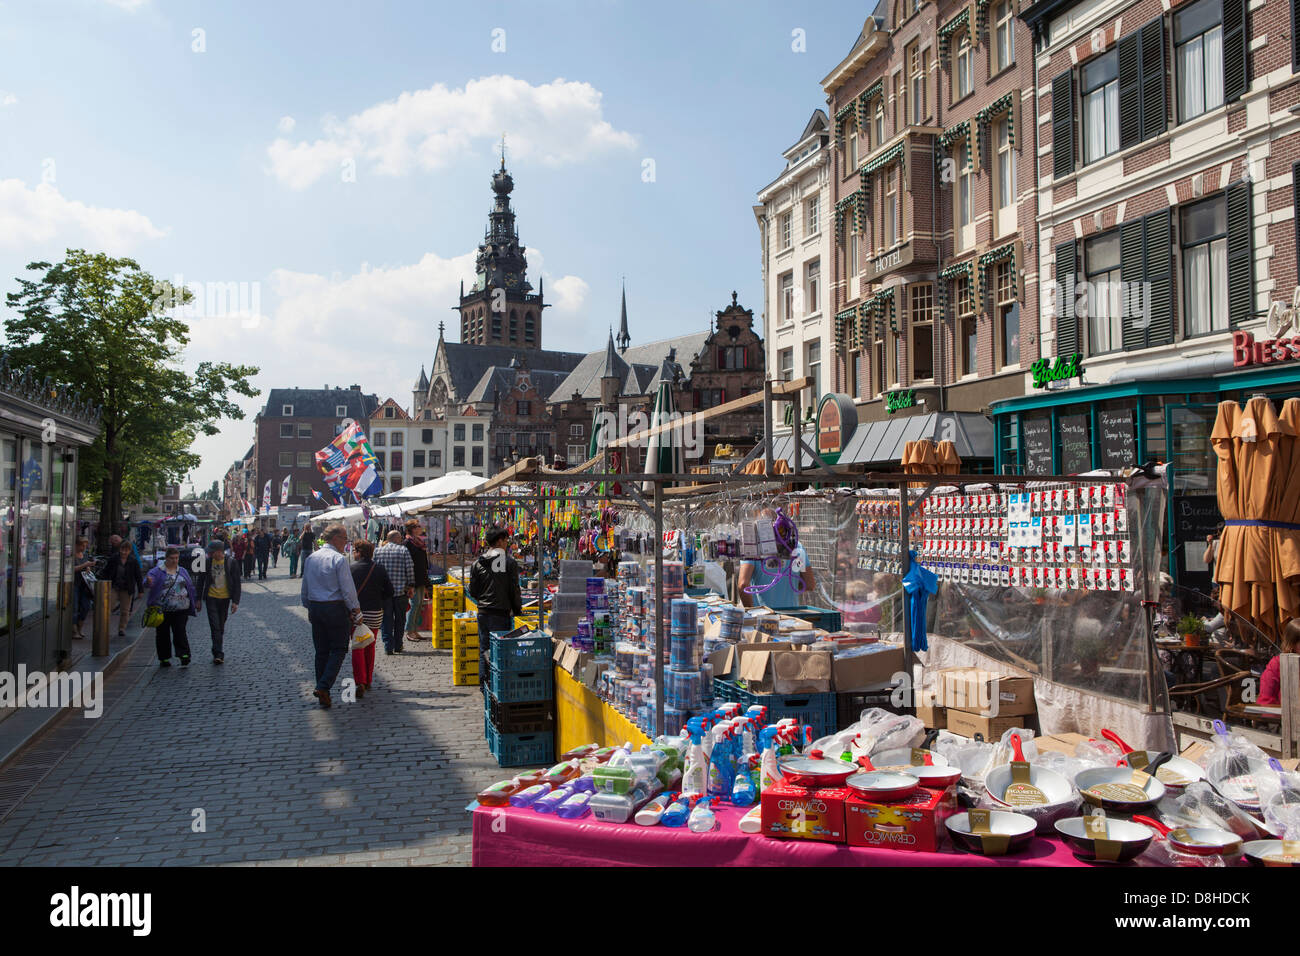 Día de mercado en el centro histórico de la ciudad de Nijmegen en los Países Bajos Foto de stock